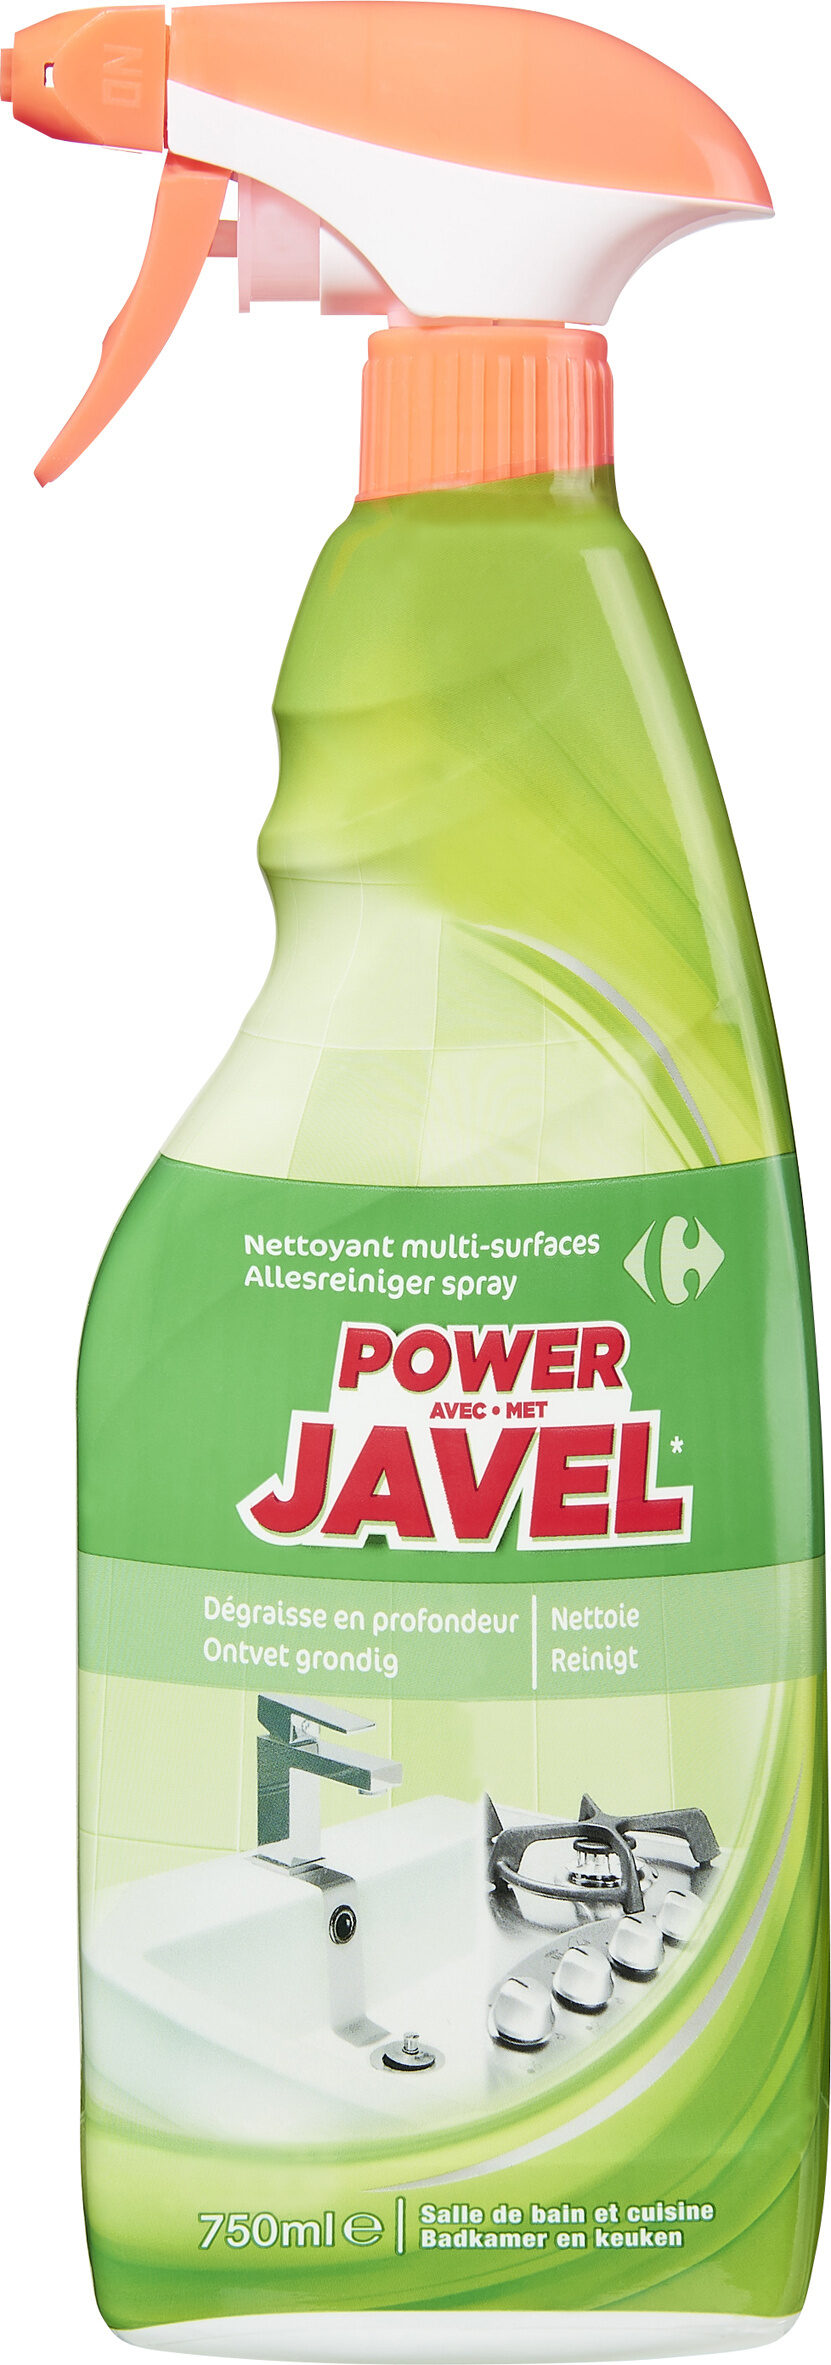 POWER avec JAVEL - Product - fr